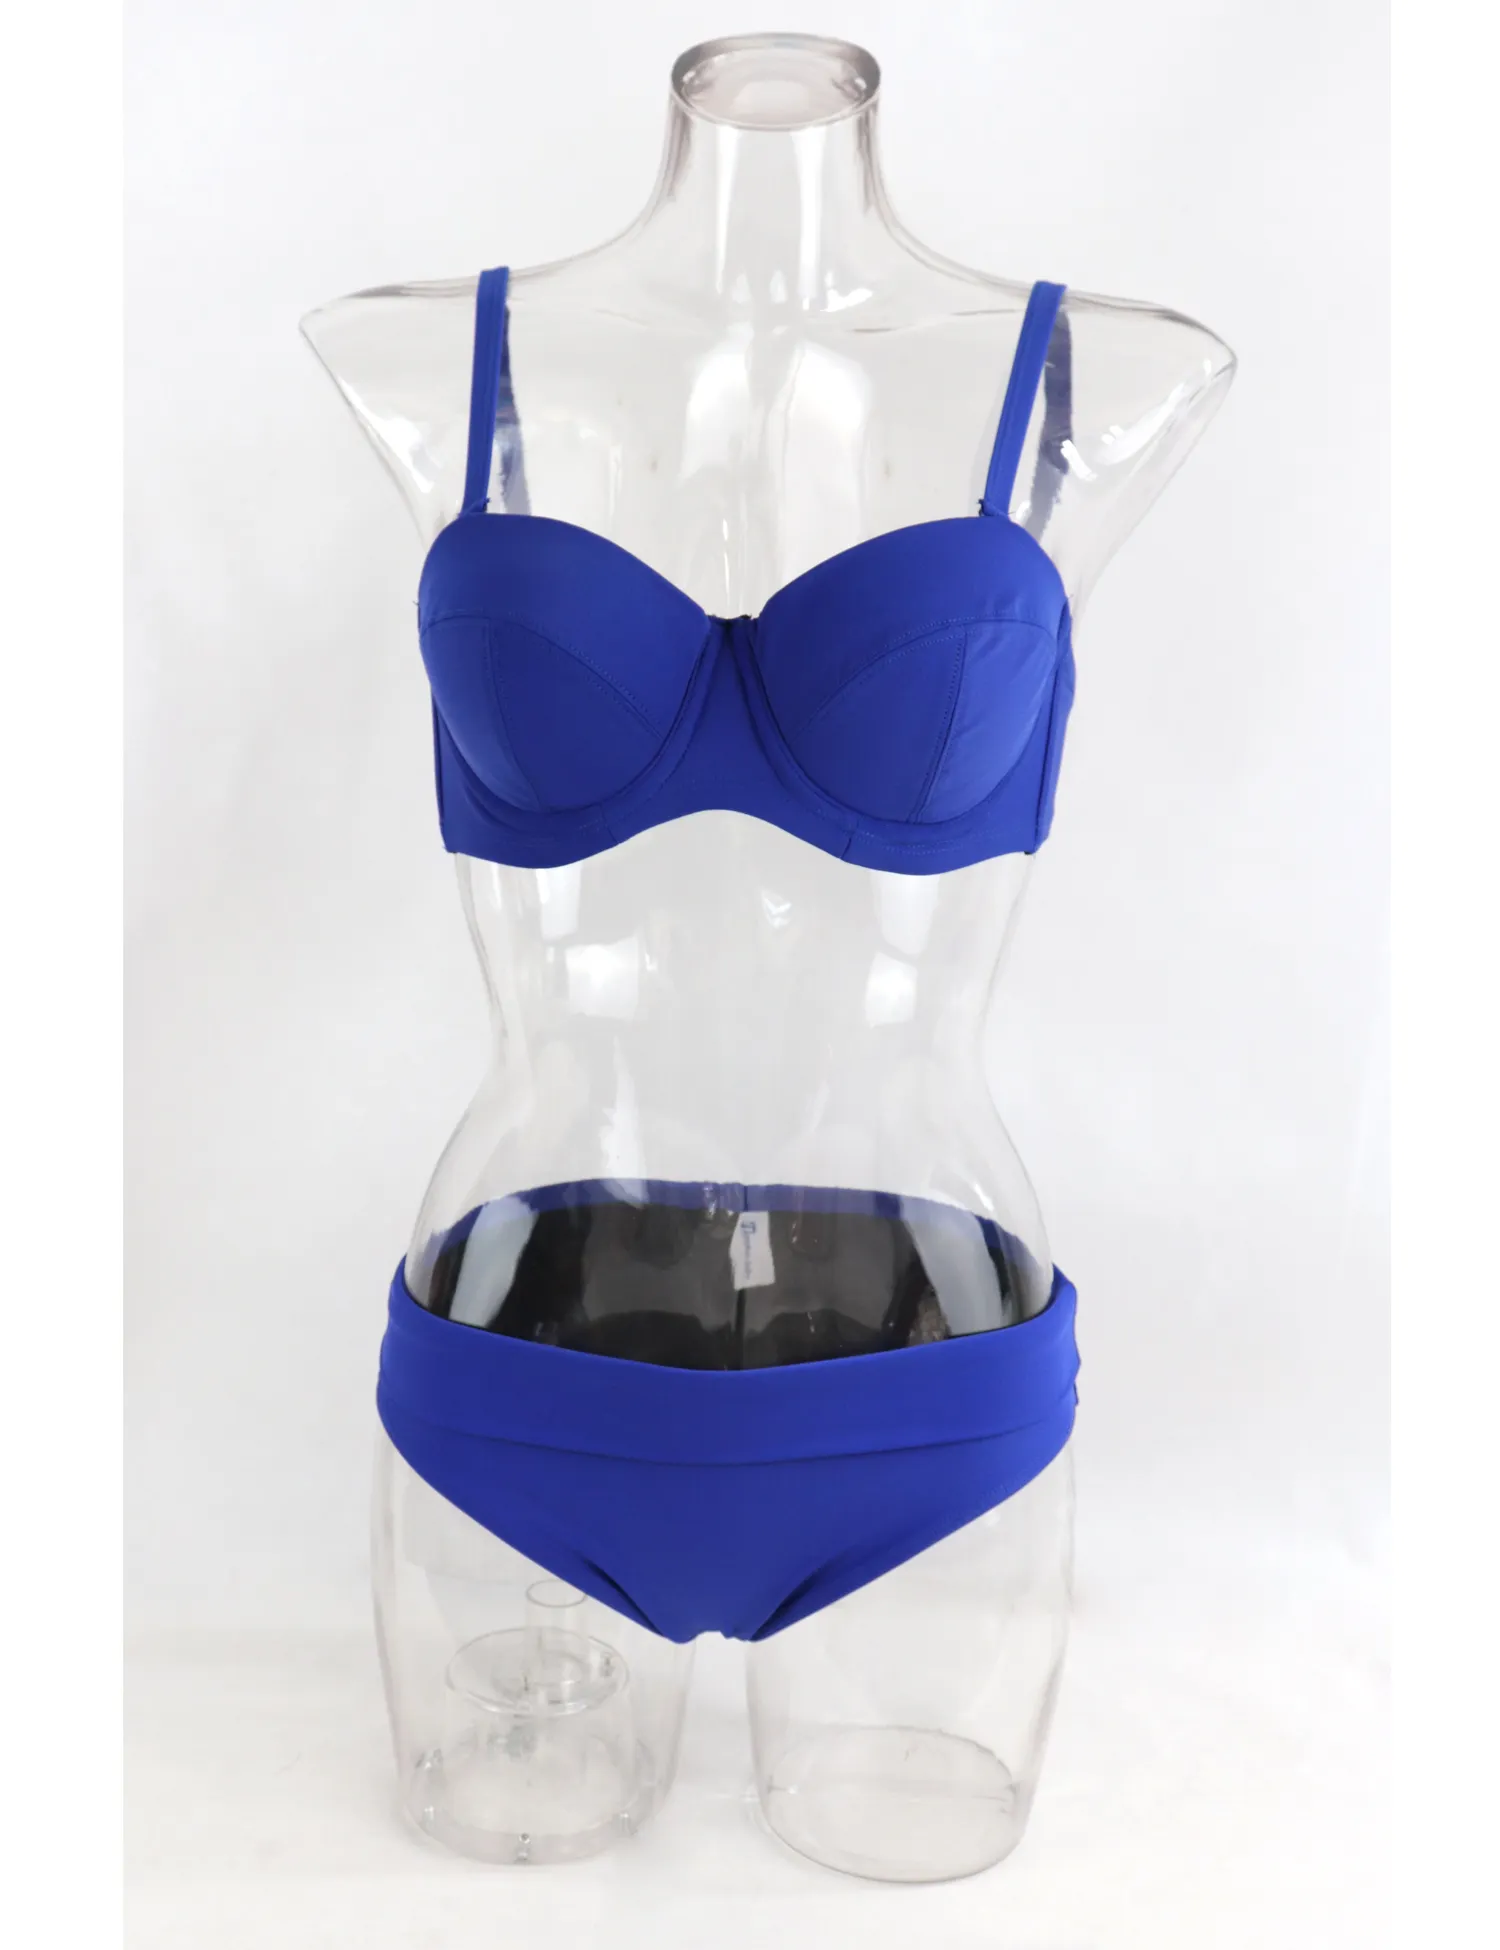 Push Up Women Two Piece Underwire Bra Sized Bikini Top with Bottom Custom Swimwear for Big Breast